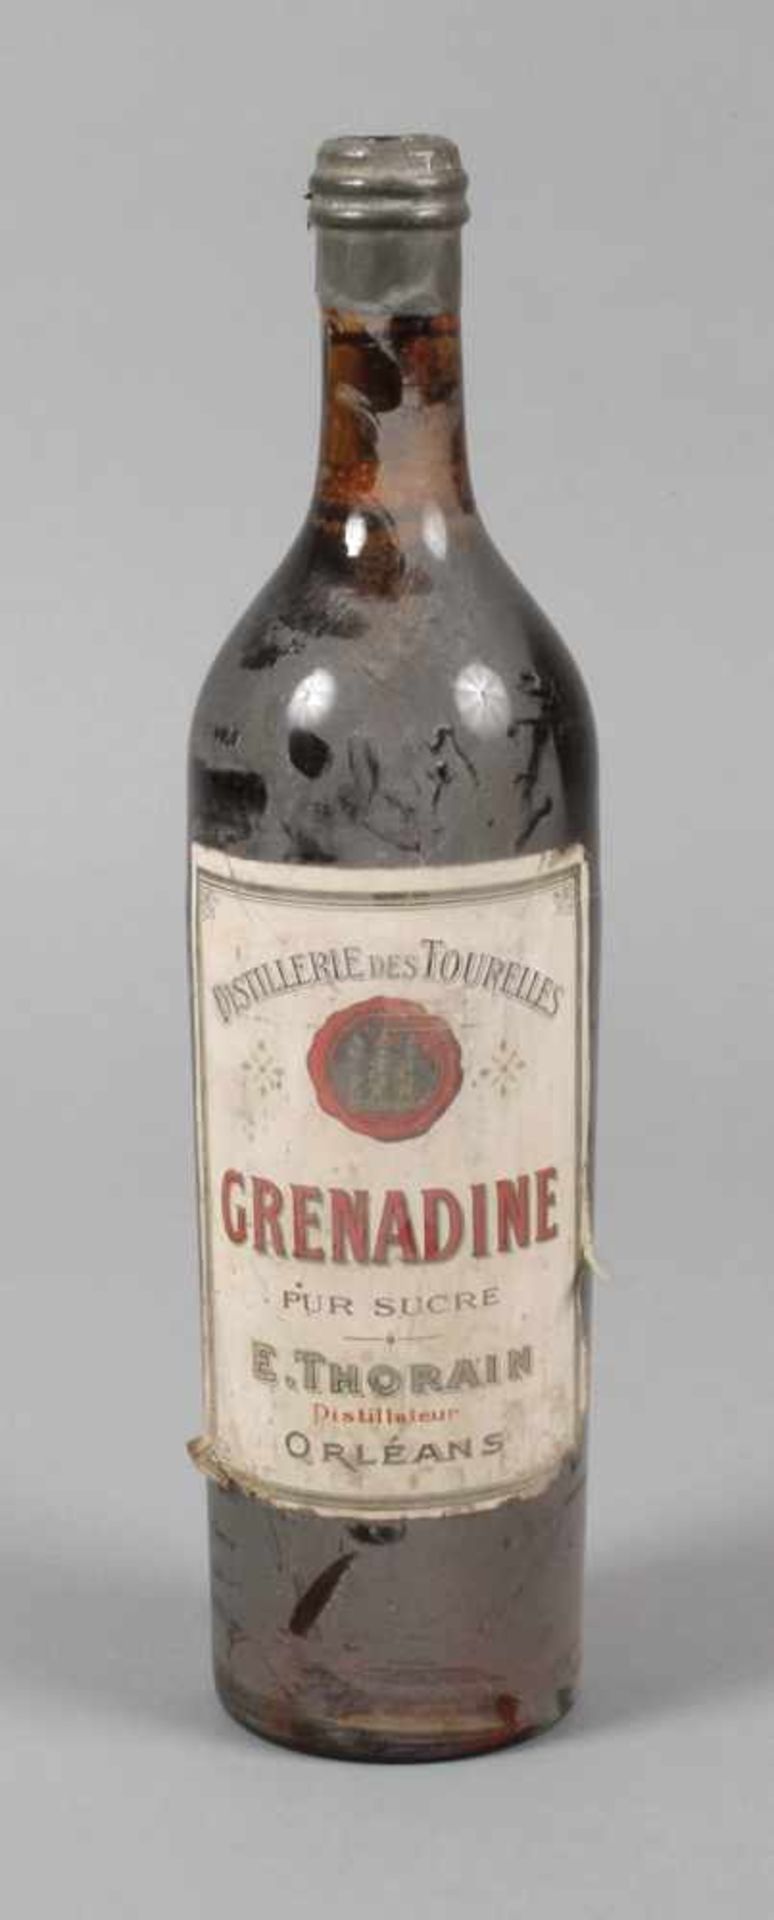 Flasche Grenadine Frankreich, 1930er Jahre, bezeichnet Distillerie des Tourelles Grenadine pur